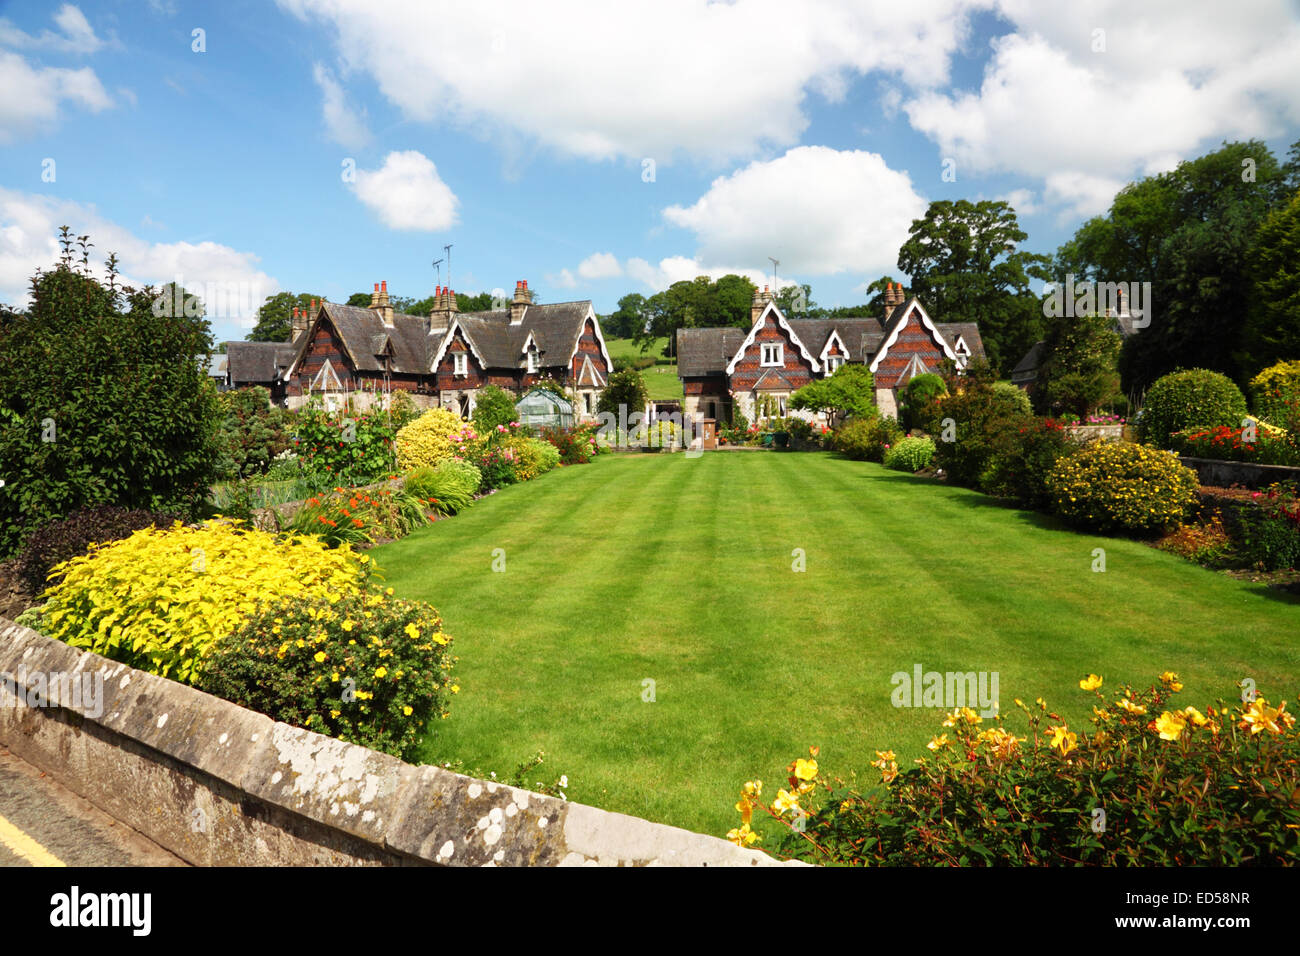 Un cottage Inglese giardino con un ampio prato, fiori di colore giallo e Swiss Cottage in stile sotto un cielo blu con nuvole. Foto Stock